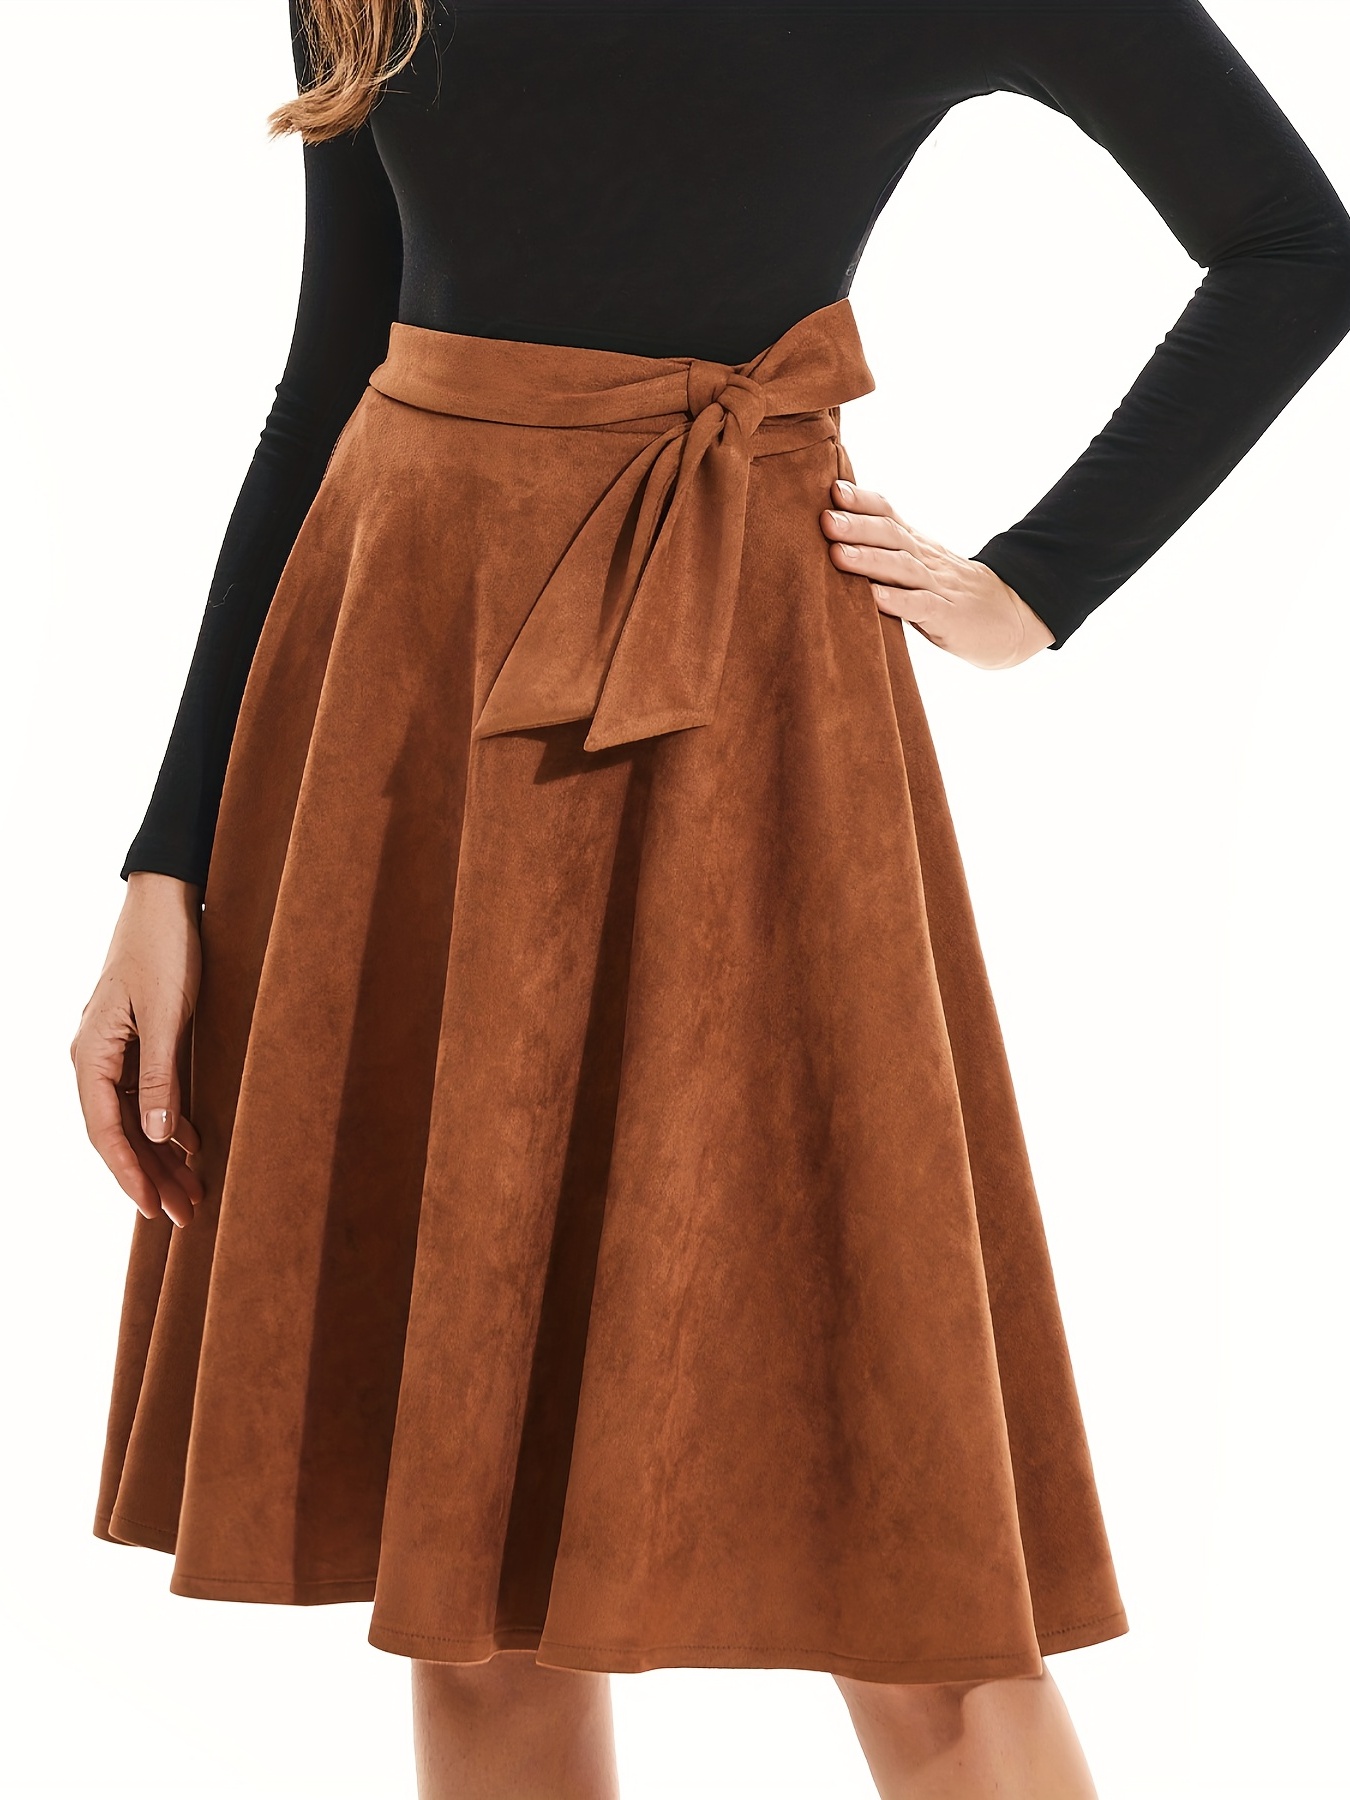 Solid Tie Waist Aline Skirt, Versatile Ruffle Hem Skirt For Spring